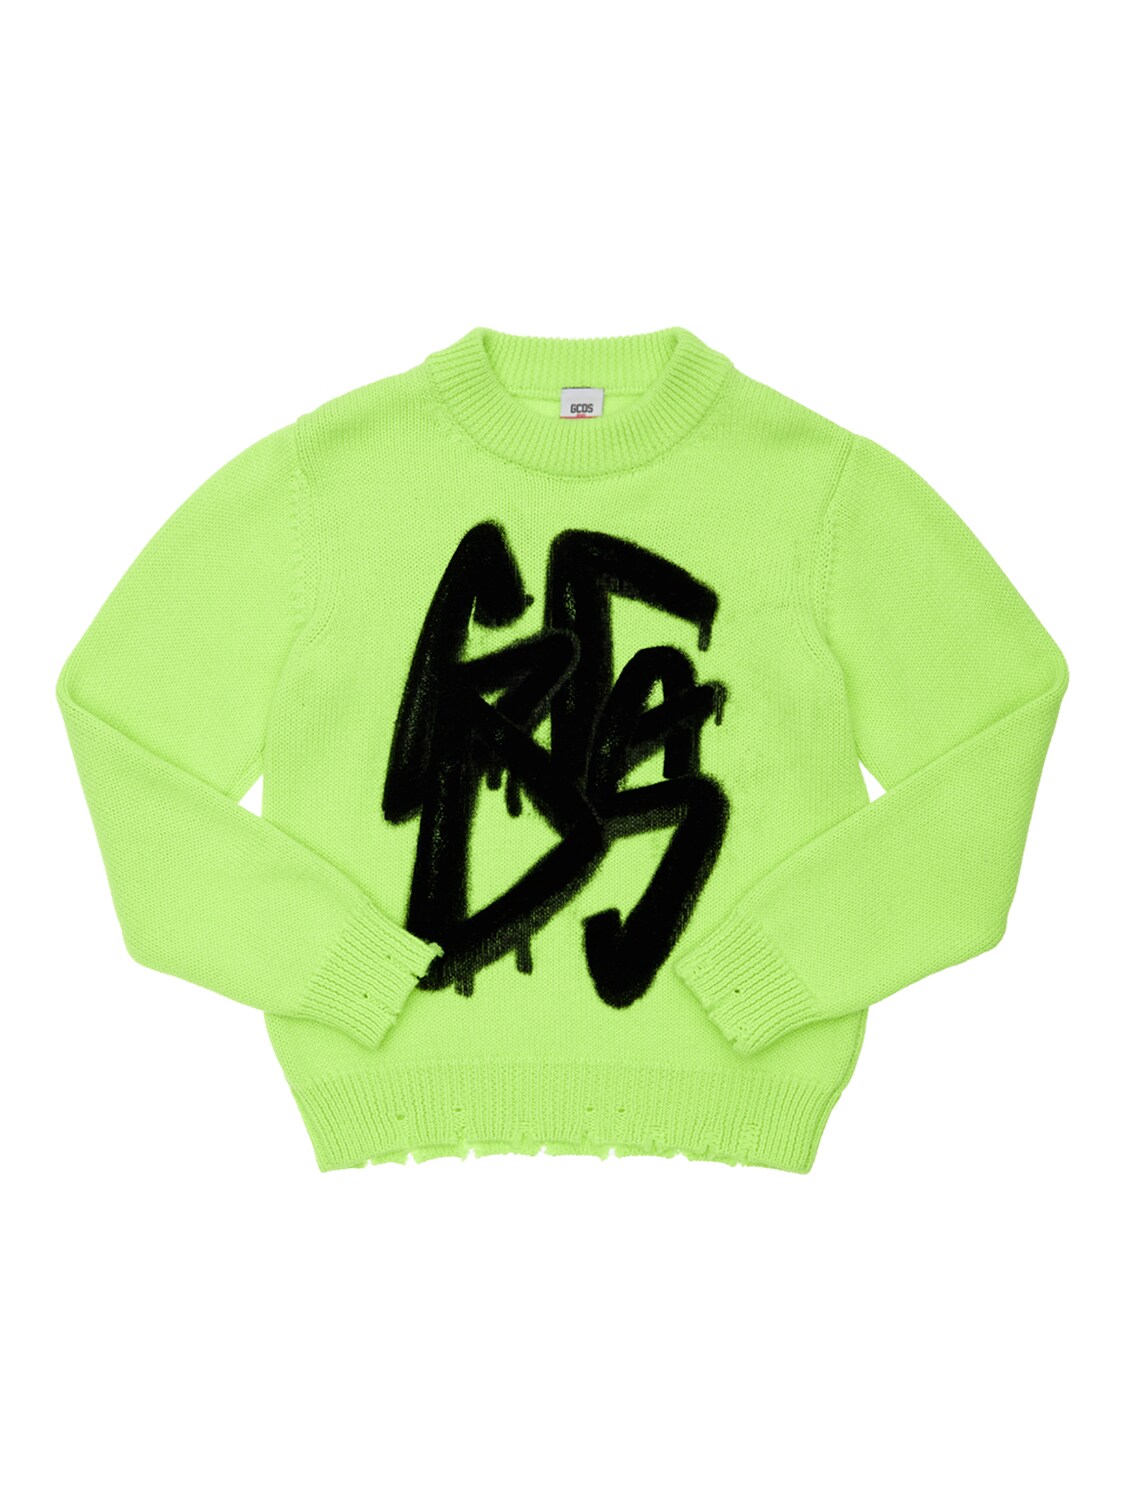 Gcds Kids' Flocked Logo Wool Blend Knit Sweater In Neon Yellow